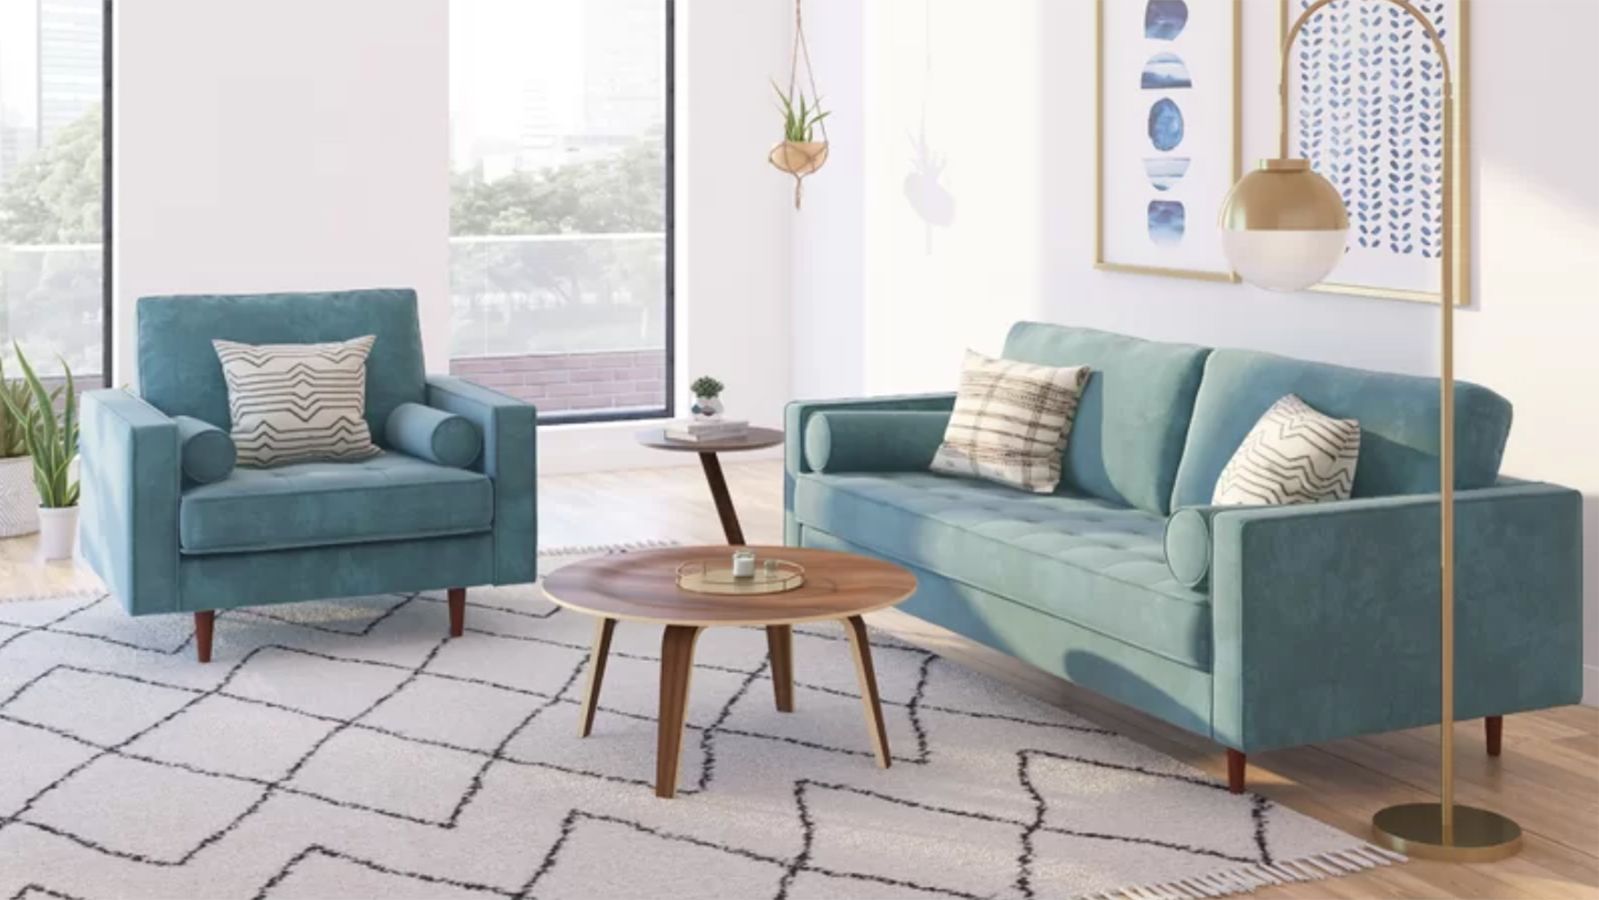 Convertible Sofa Bed Gray - Room Essentials™